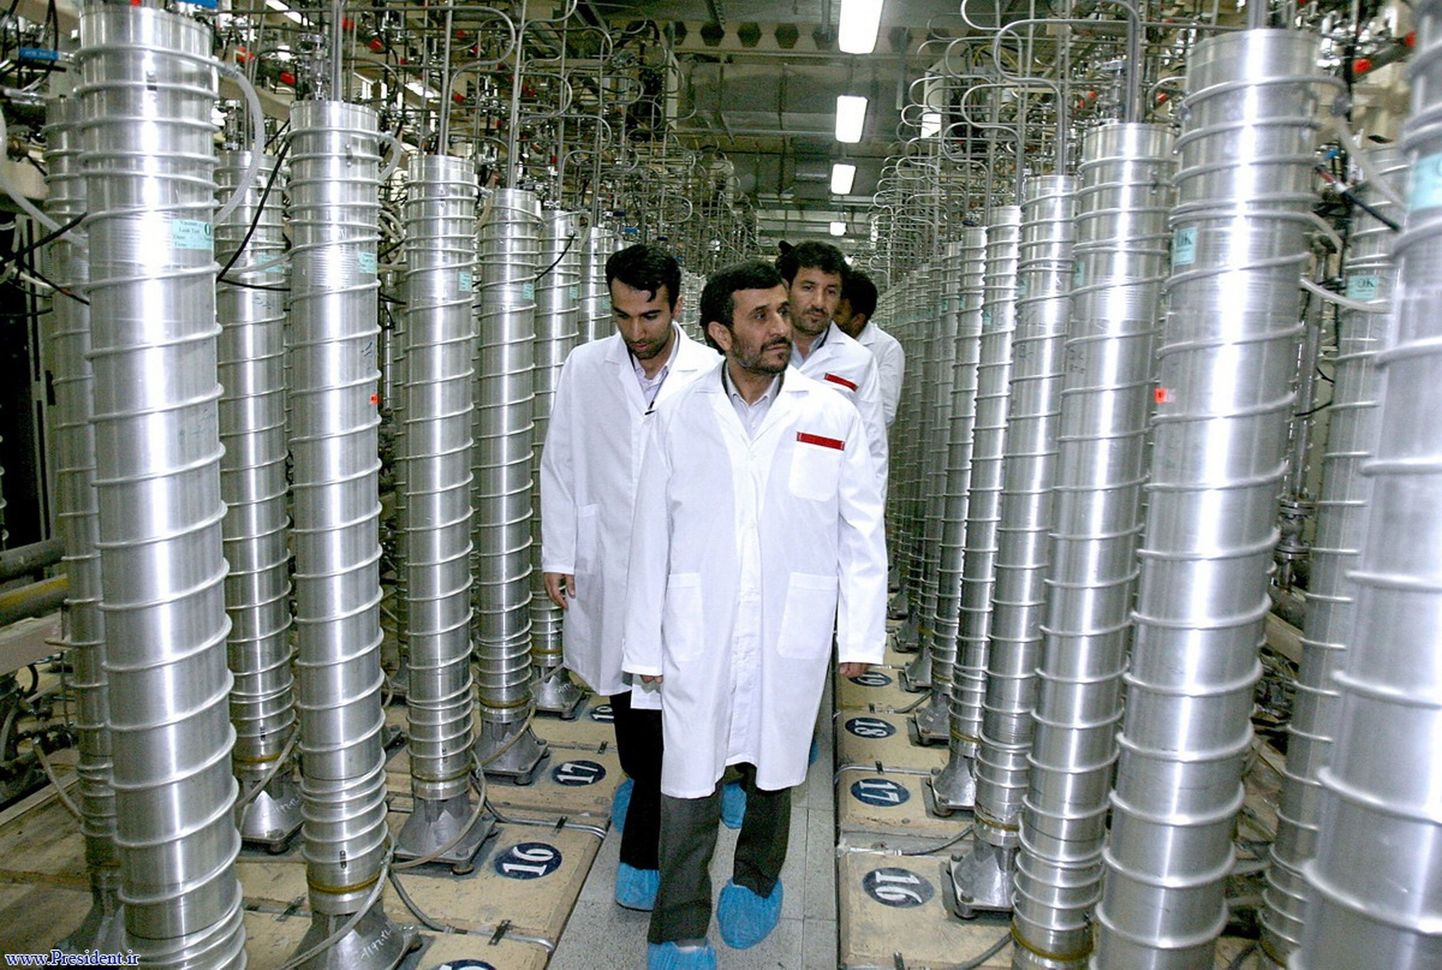 Iraani president Mahmoud Ahmadinejad (esiplaanil) uraanirikastamistehases.